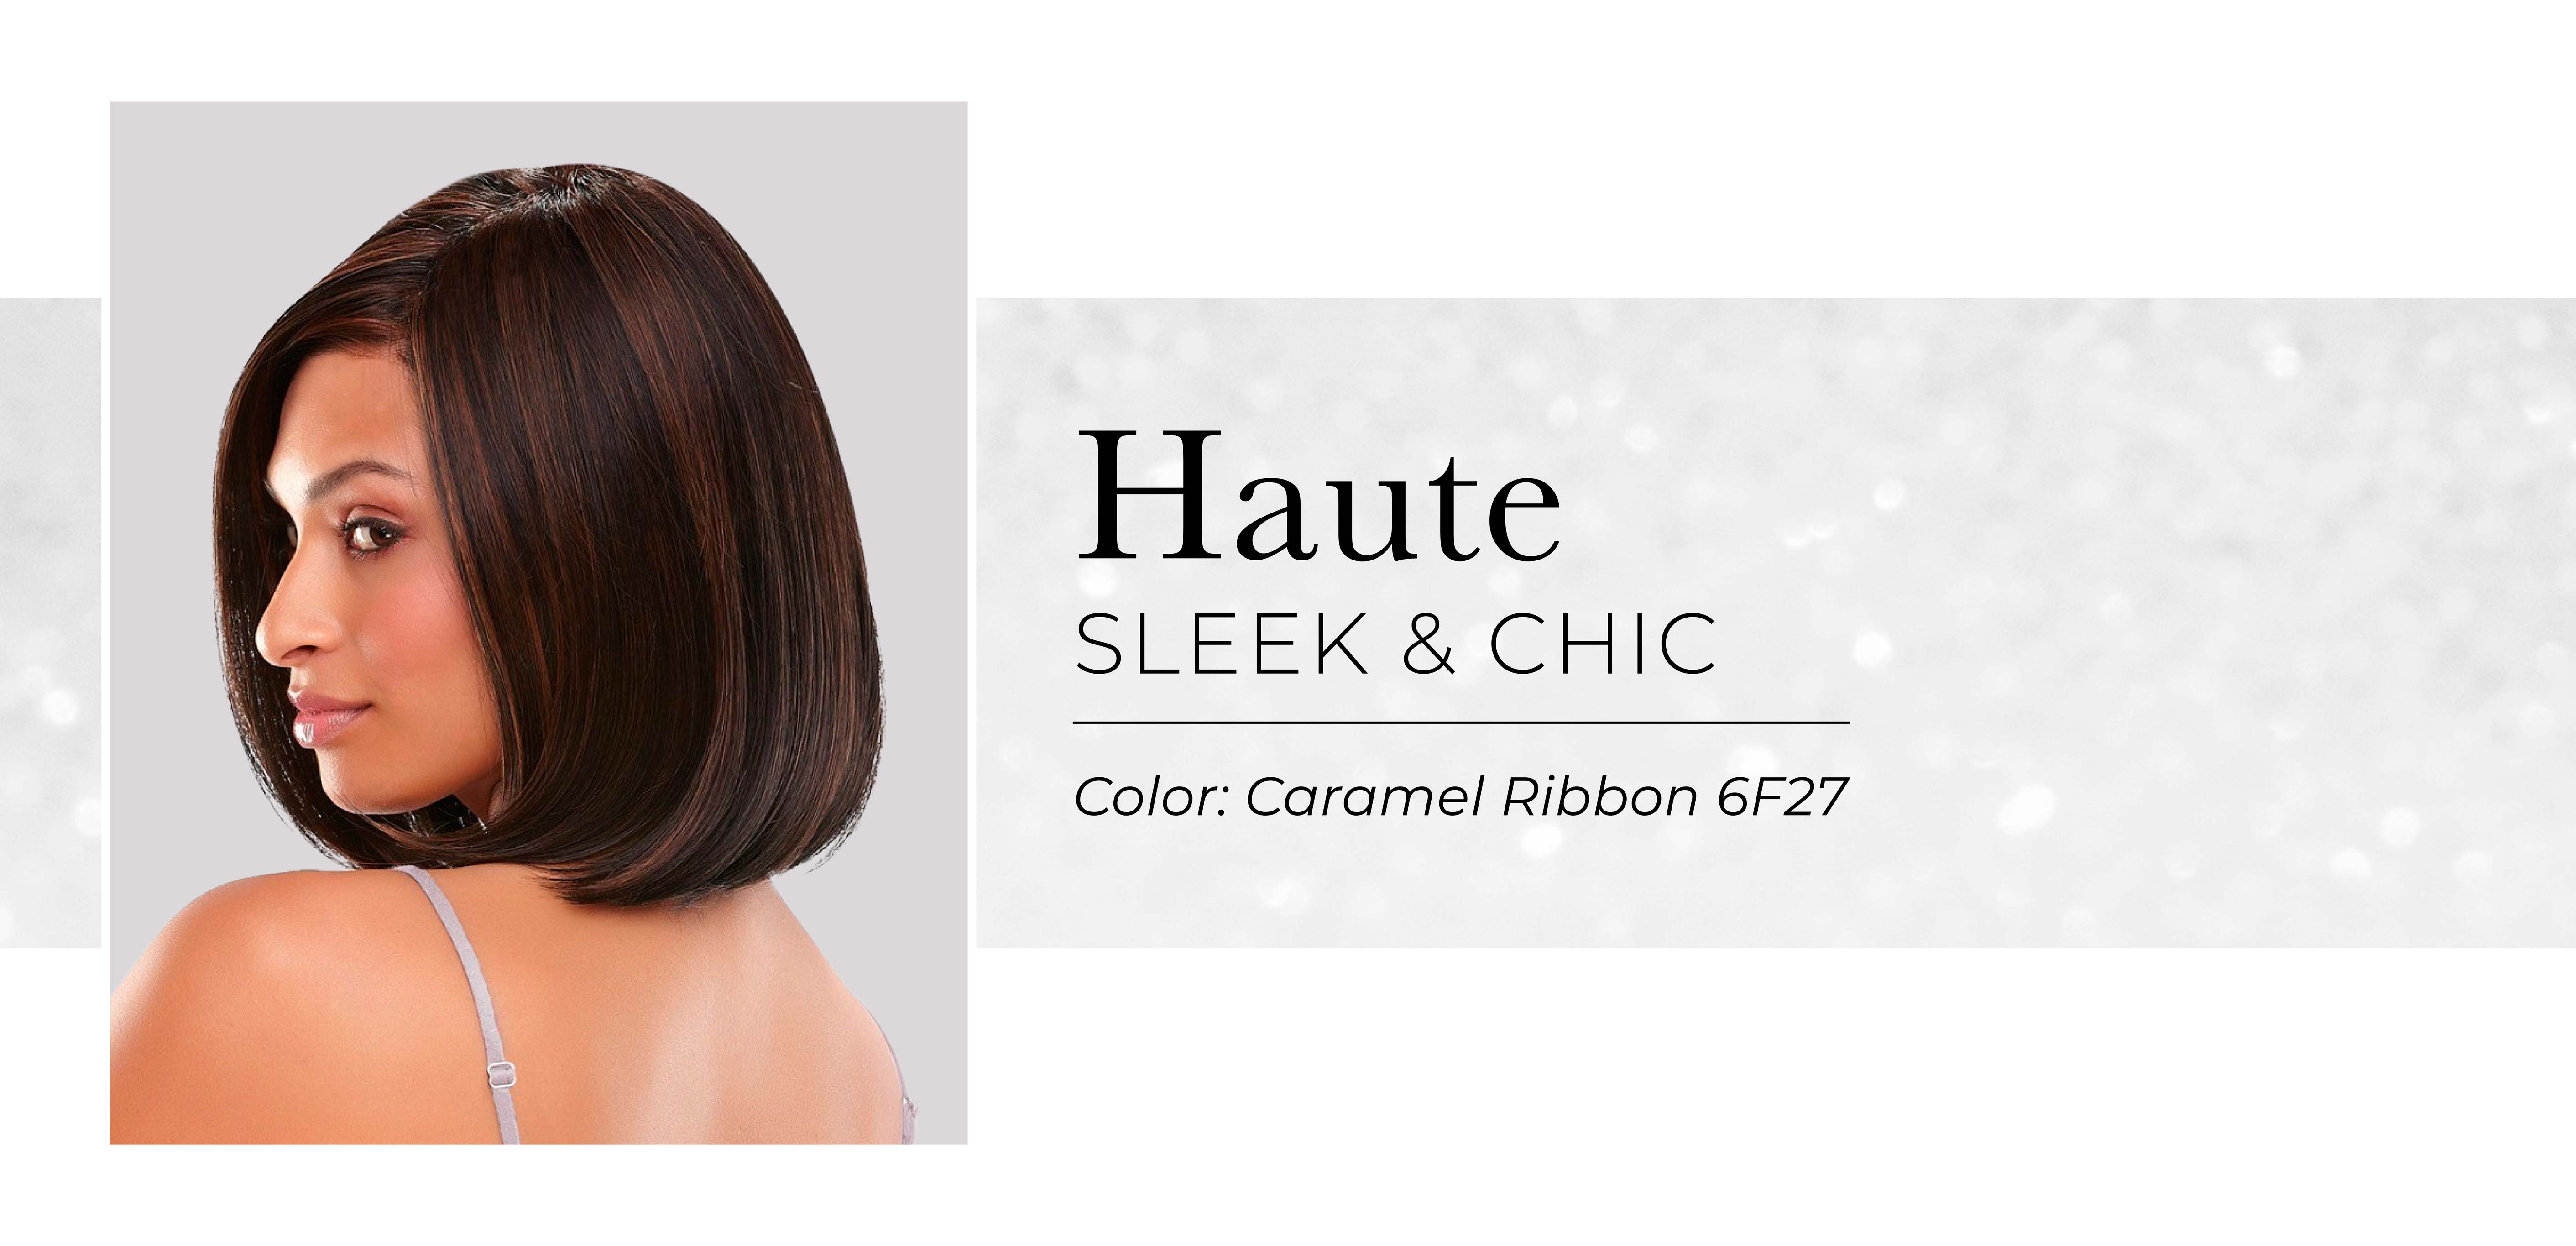 Haute: Sleek & chic heat resistant wig